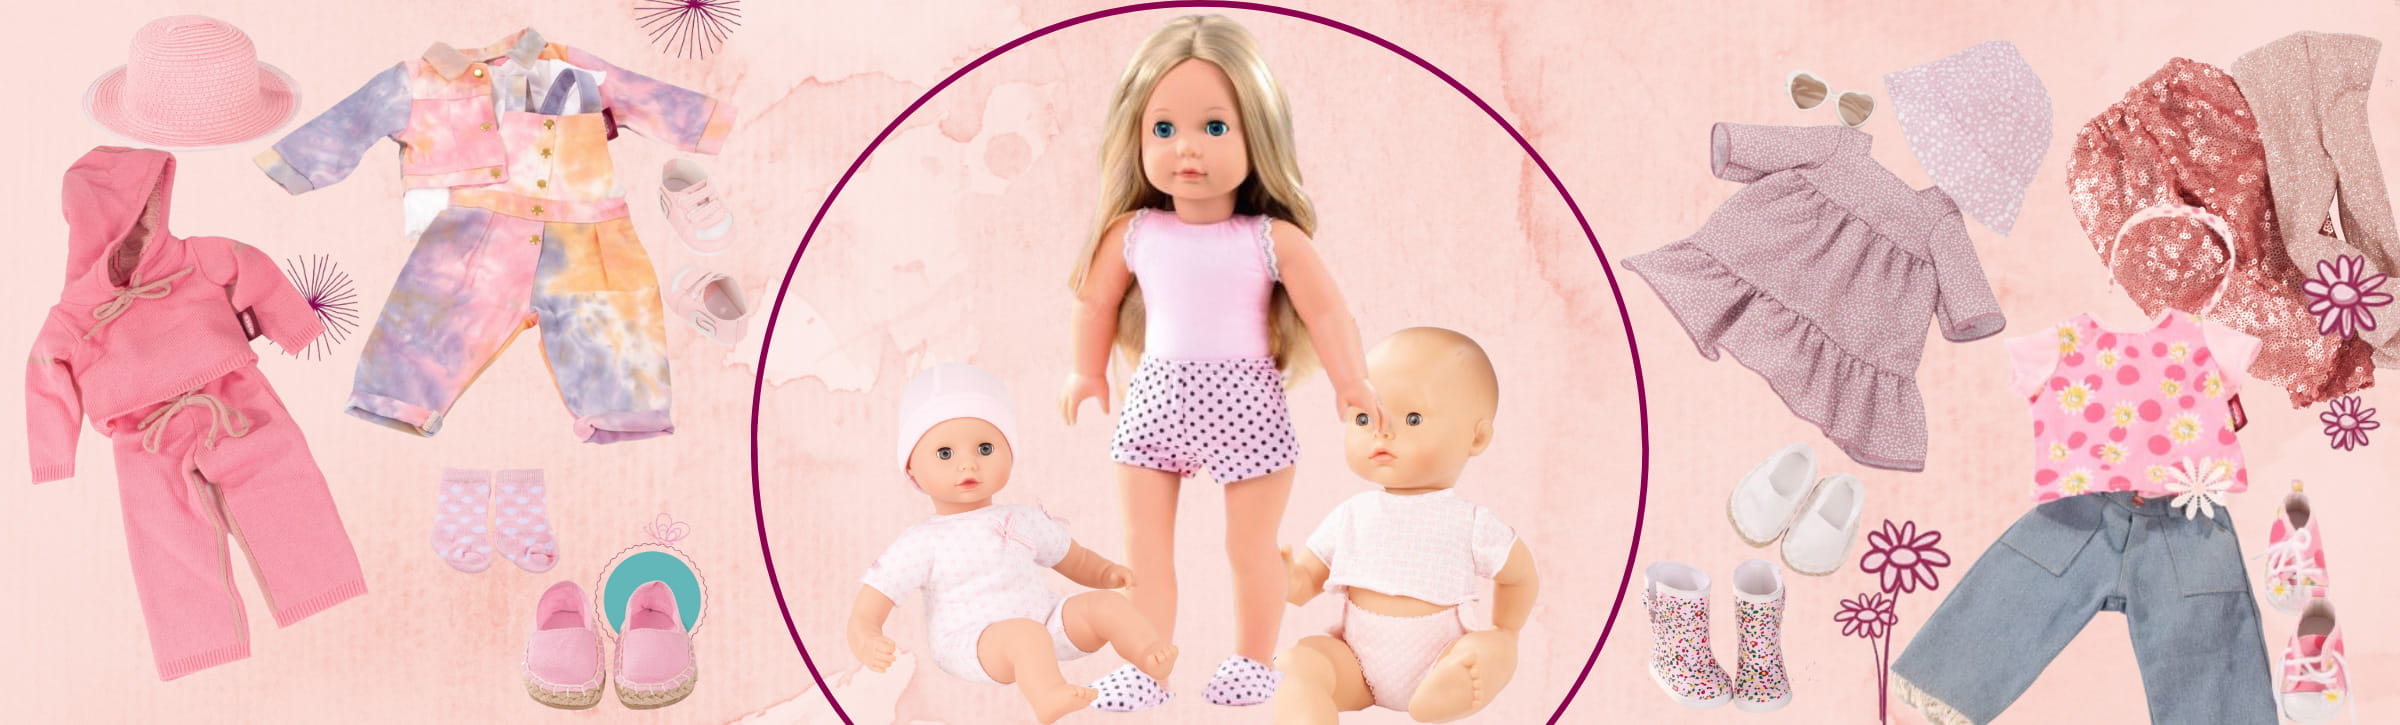 Puppen zum anziehen von Götz mit verscheidenen Outfits und Puppenzubehör sind kreisrund abgebildet 